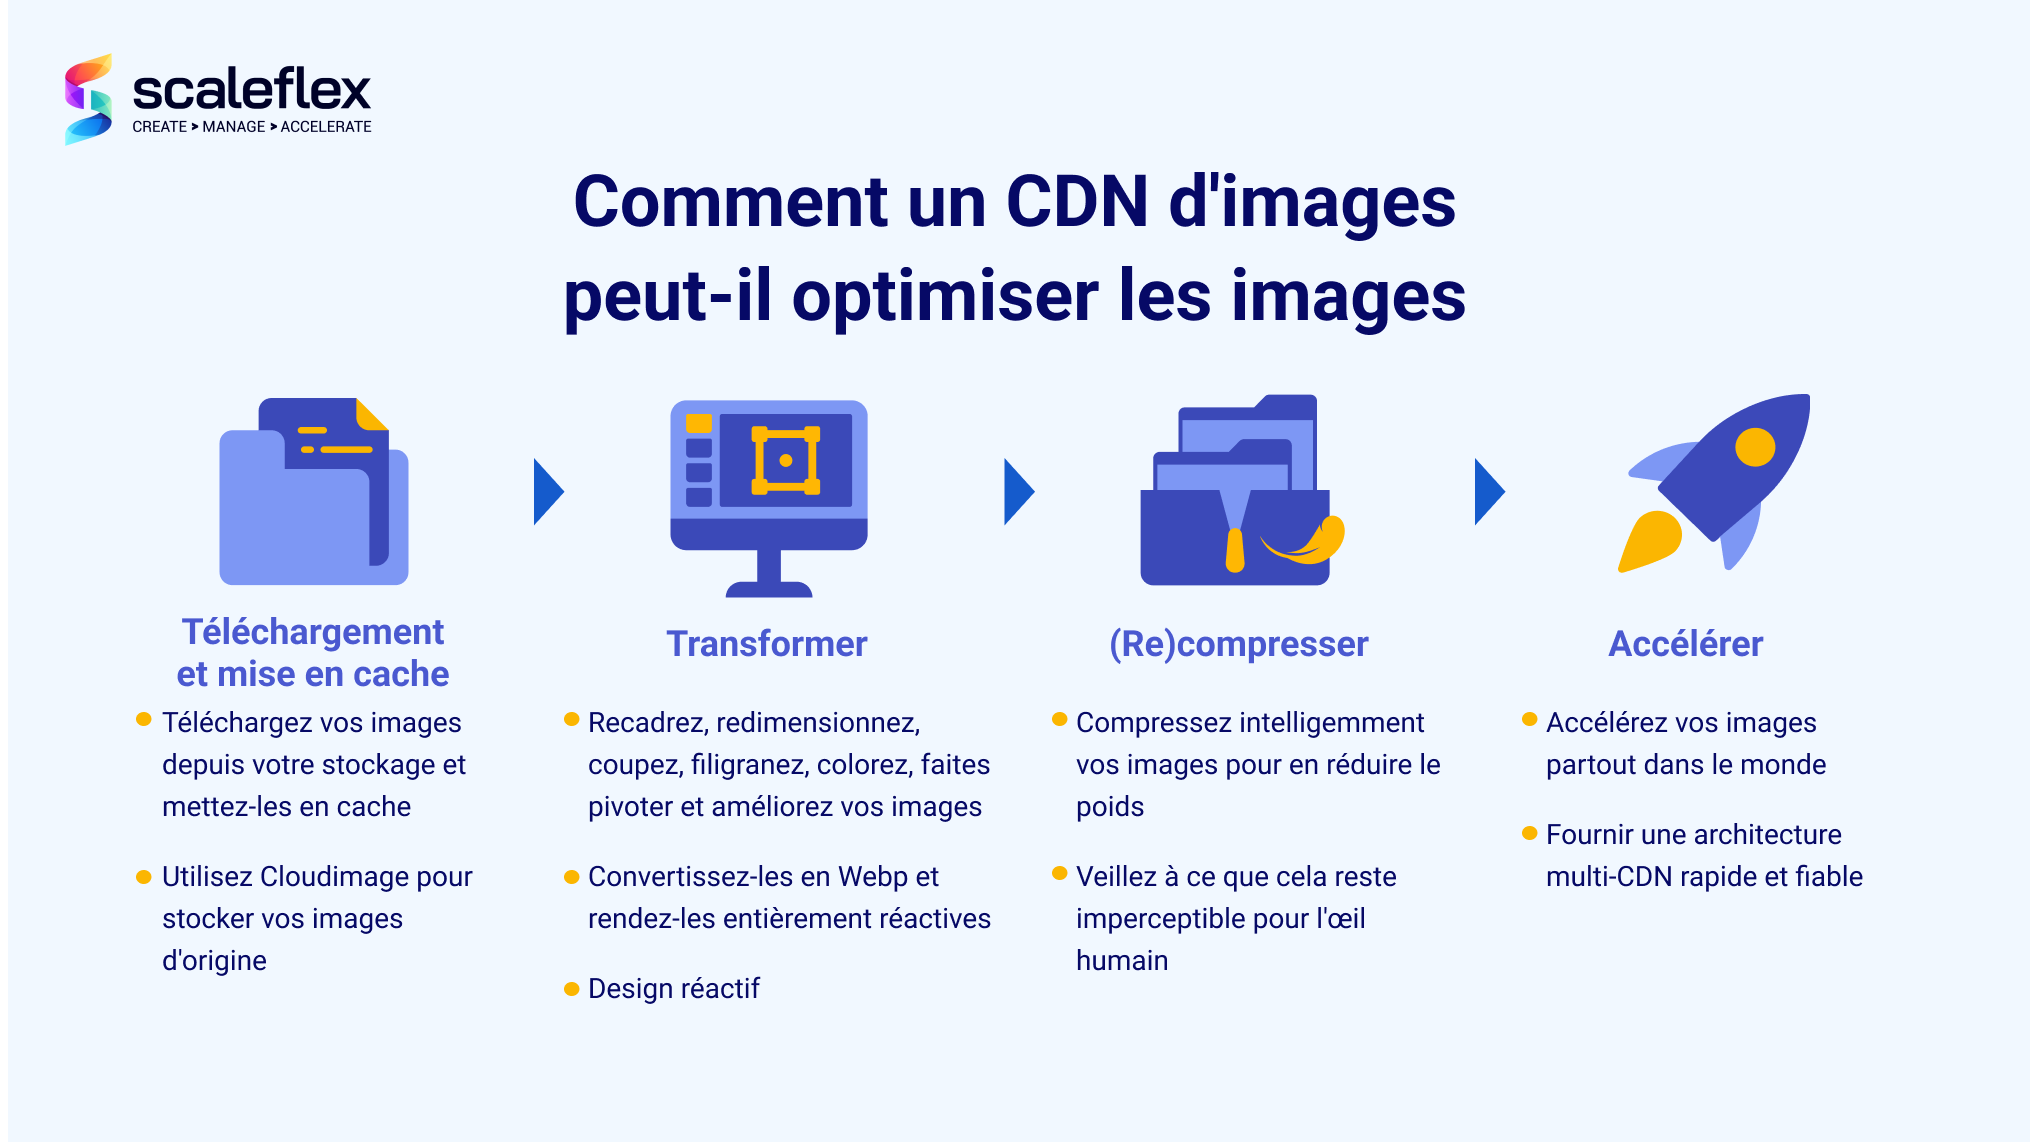 Le processus standard d'optimisation des images par un CDN d'images